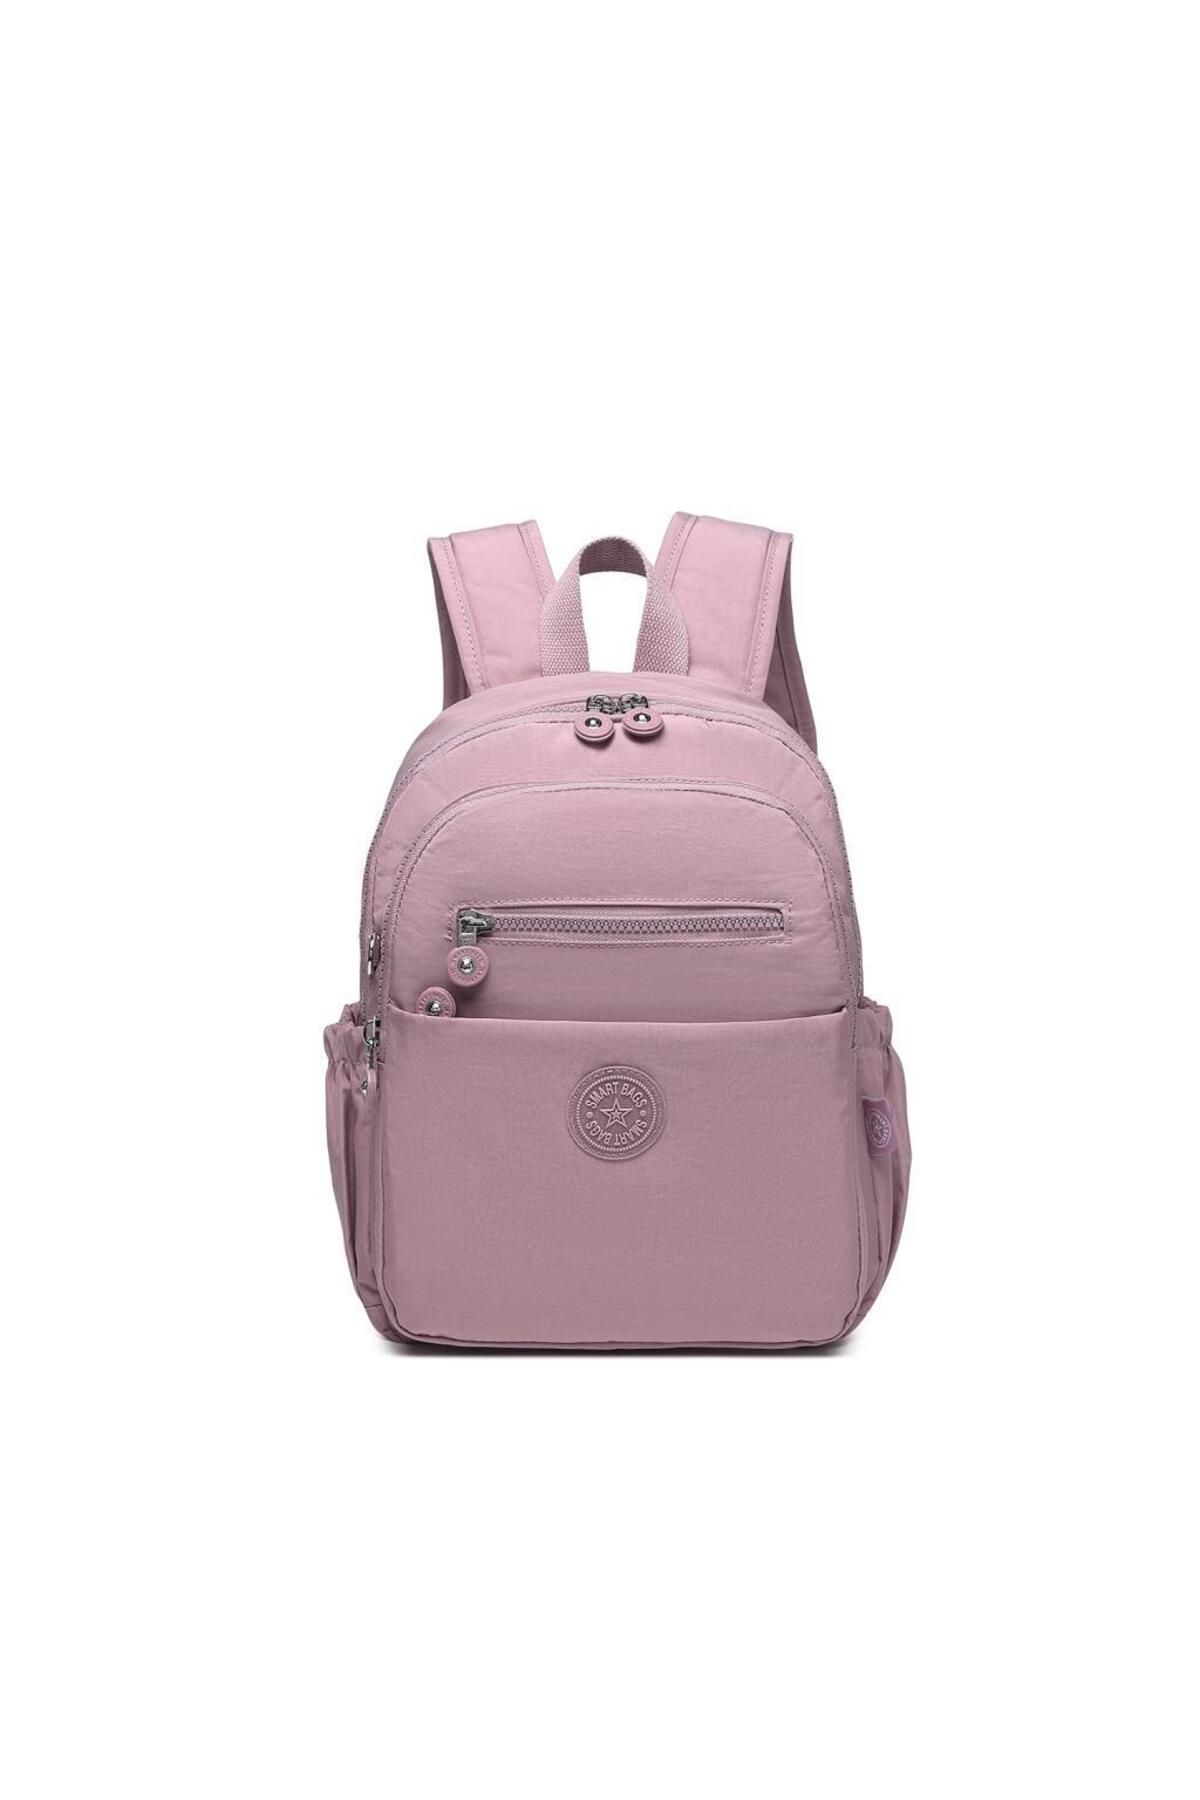 Smart Bags Orta Boy Kadın Sırt Çantası Smart Bags Krinkıl Kumaş 3230